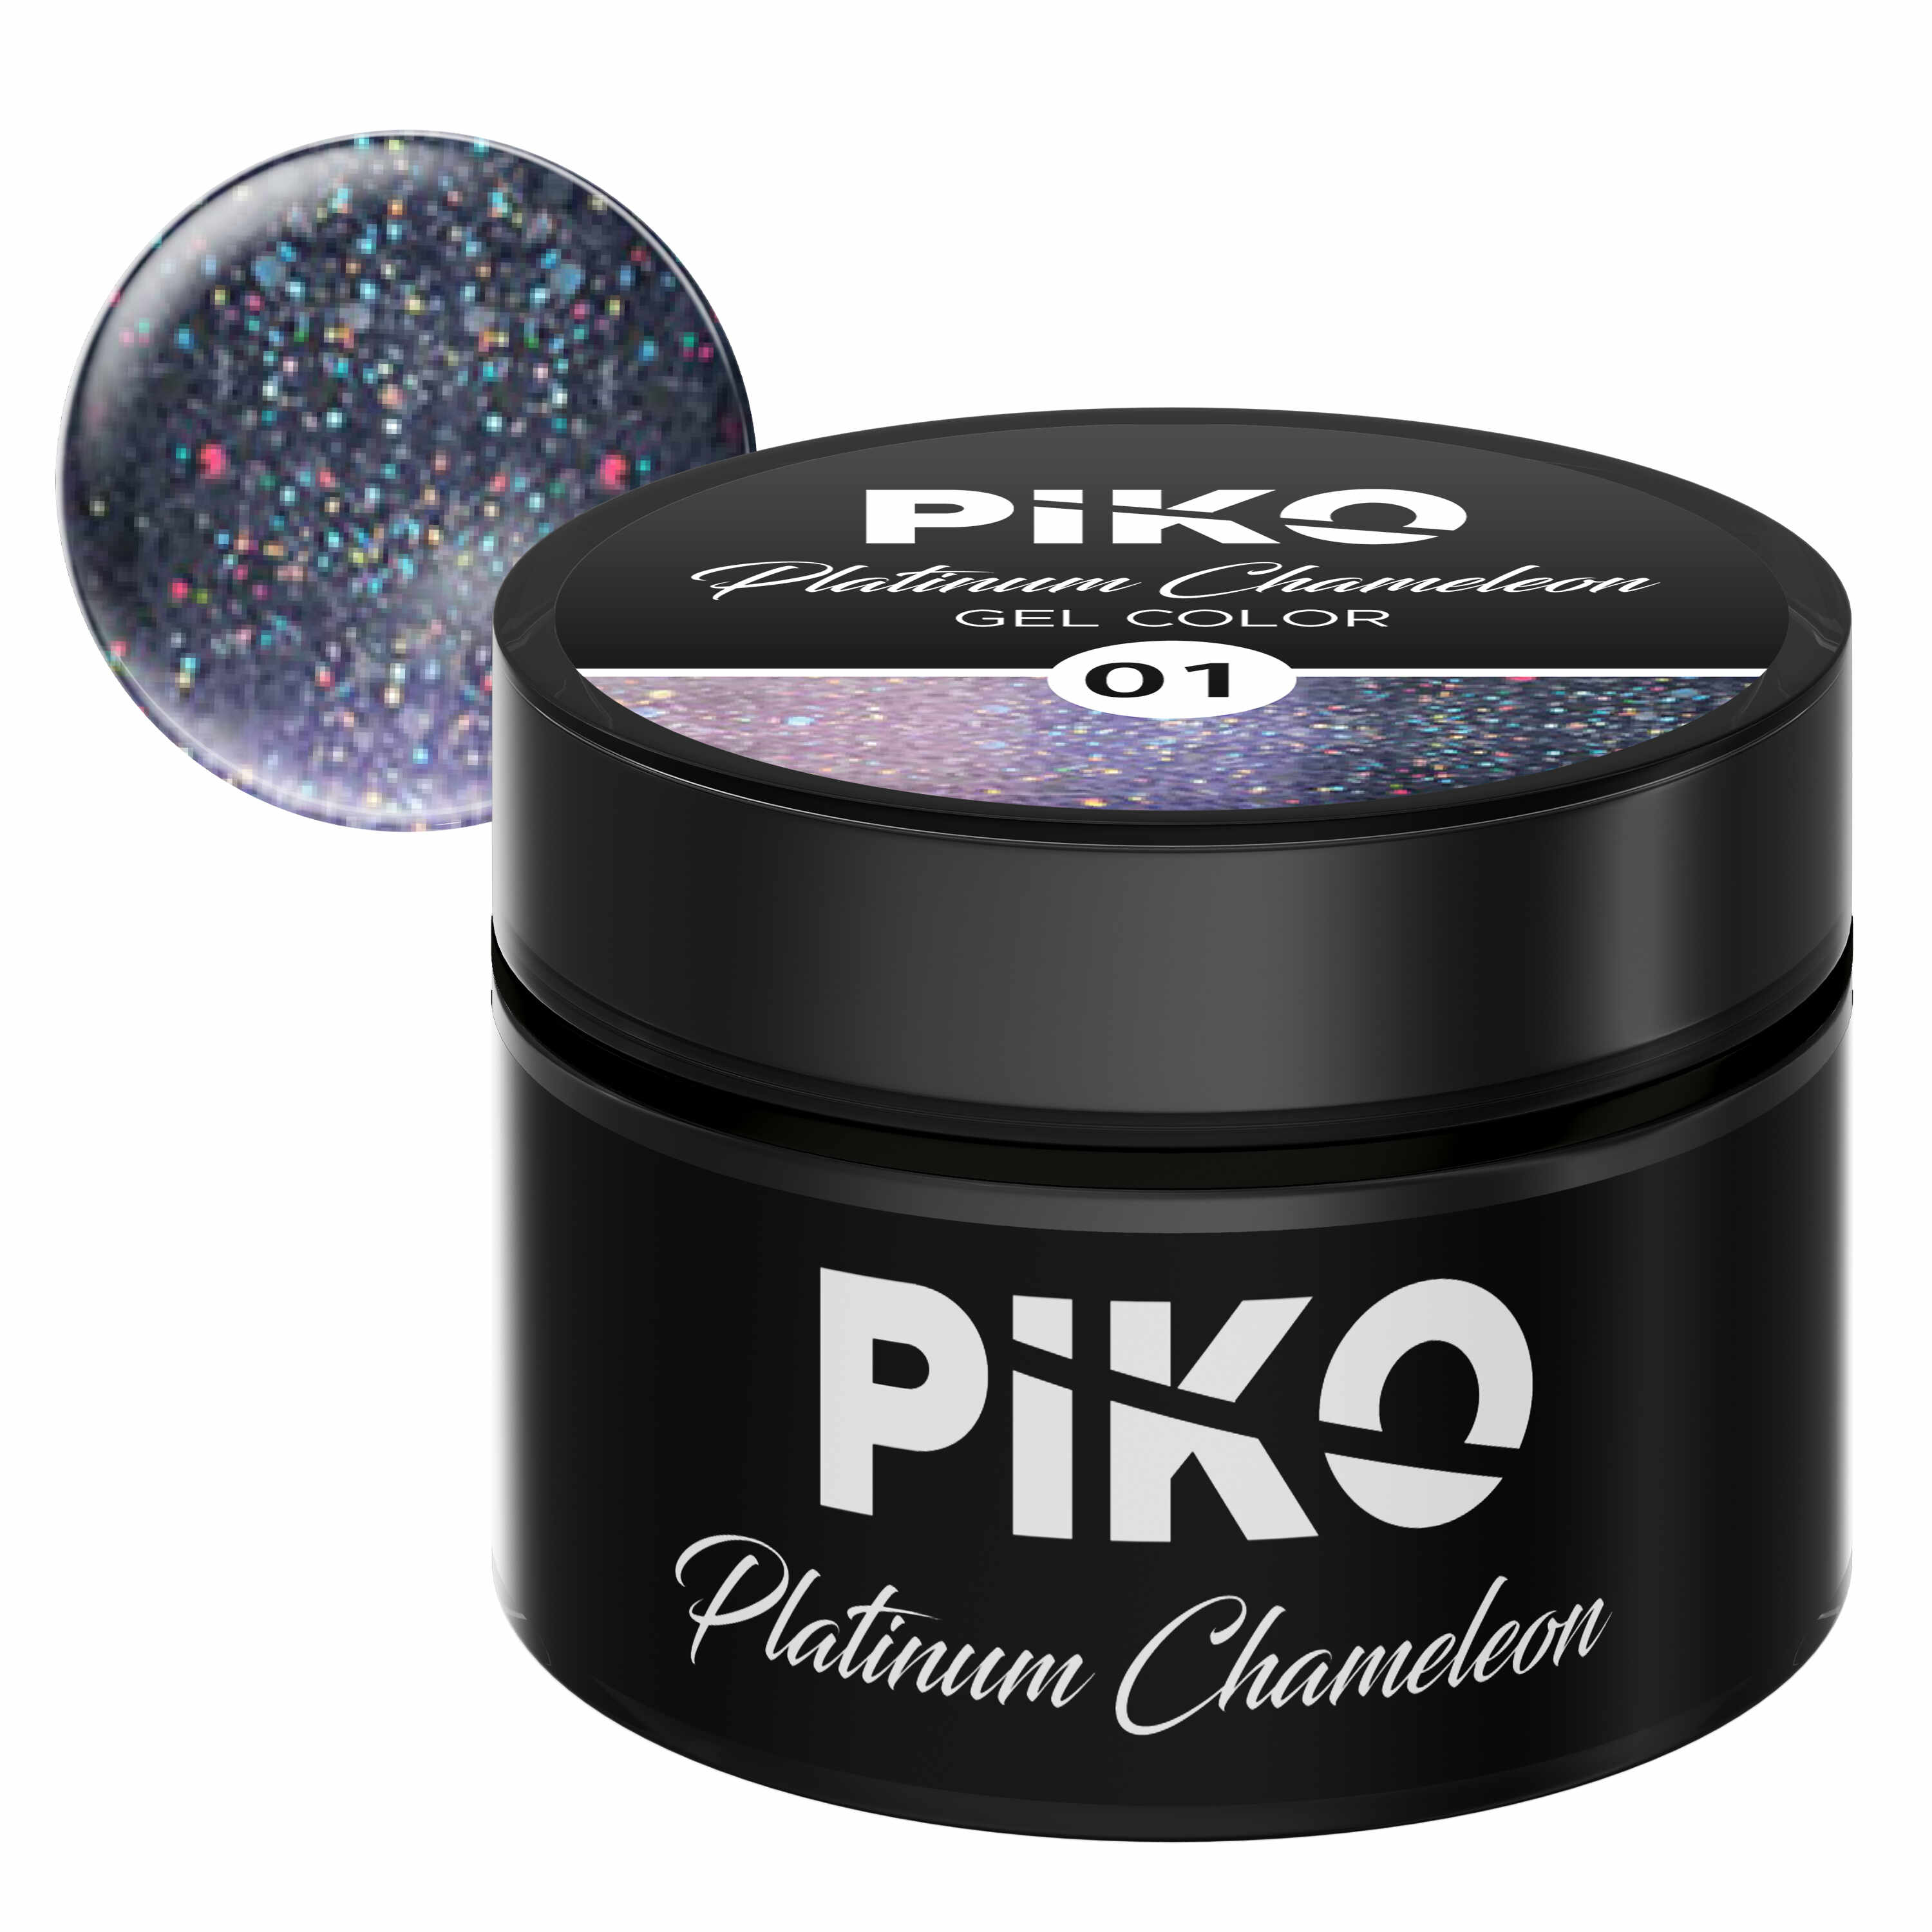 Gel color Piko, Platinum Chameleon, 5g, model 01